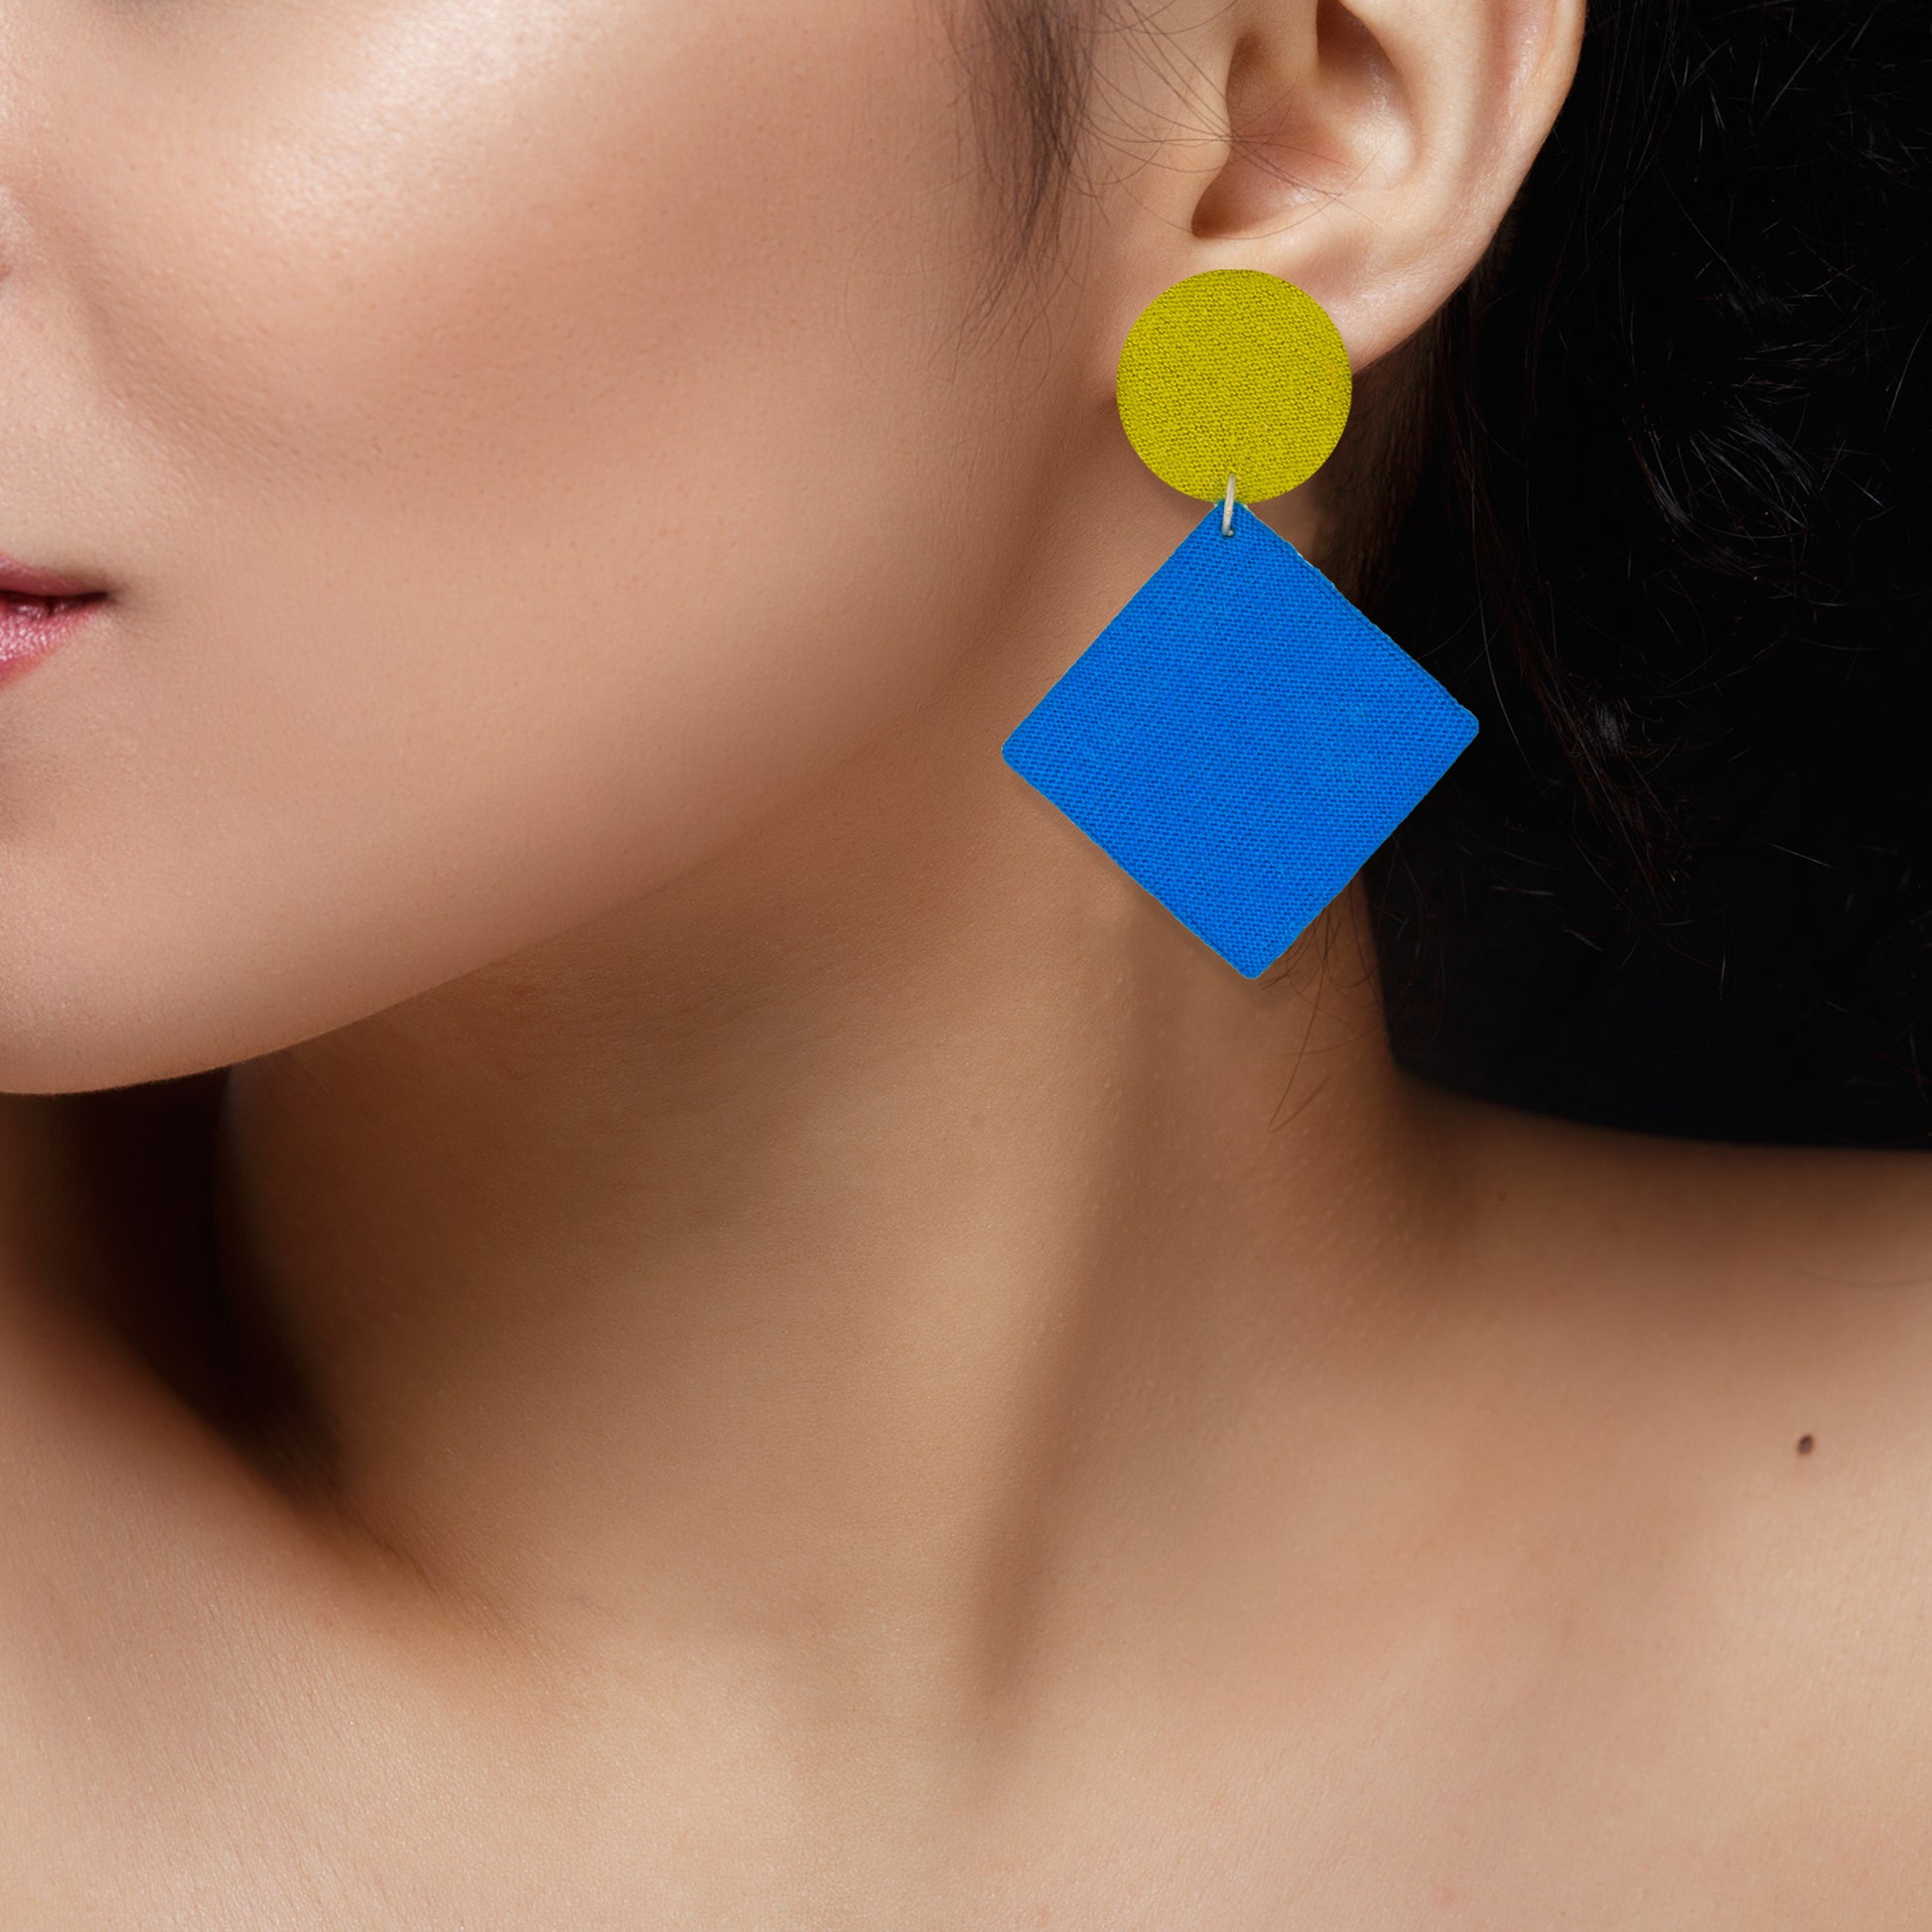 Organic Vibes Handmade Geometrical Shape Antique Dangler Fabric Earrings For Women